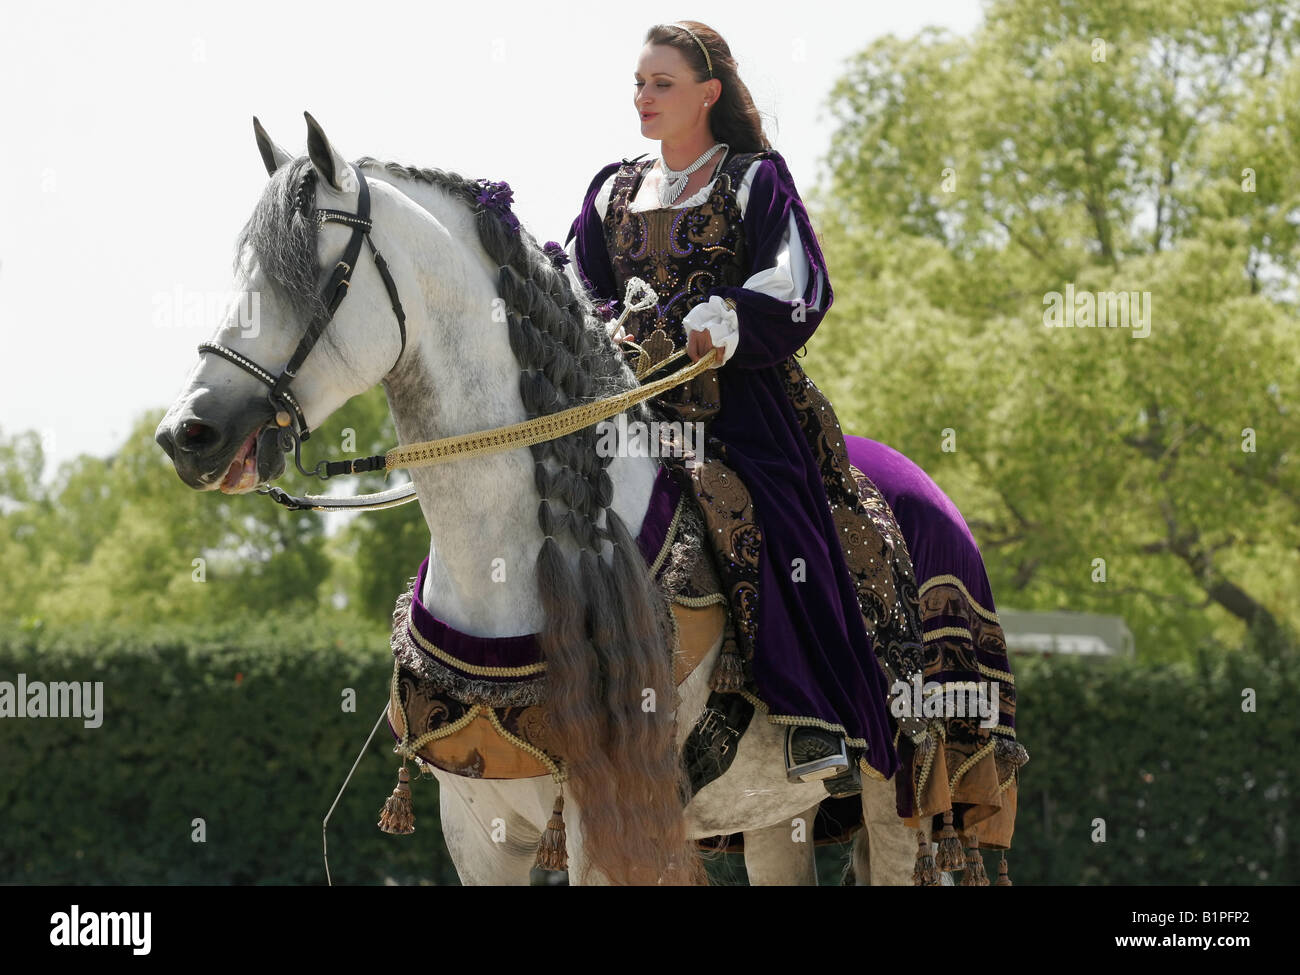 Jeune fille et son cheval vêtu d'un costume médiéval Banque D'Images